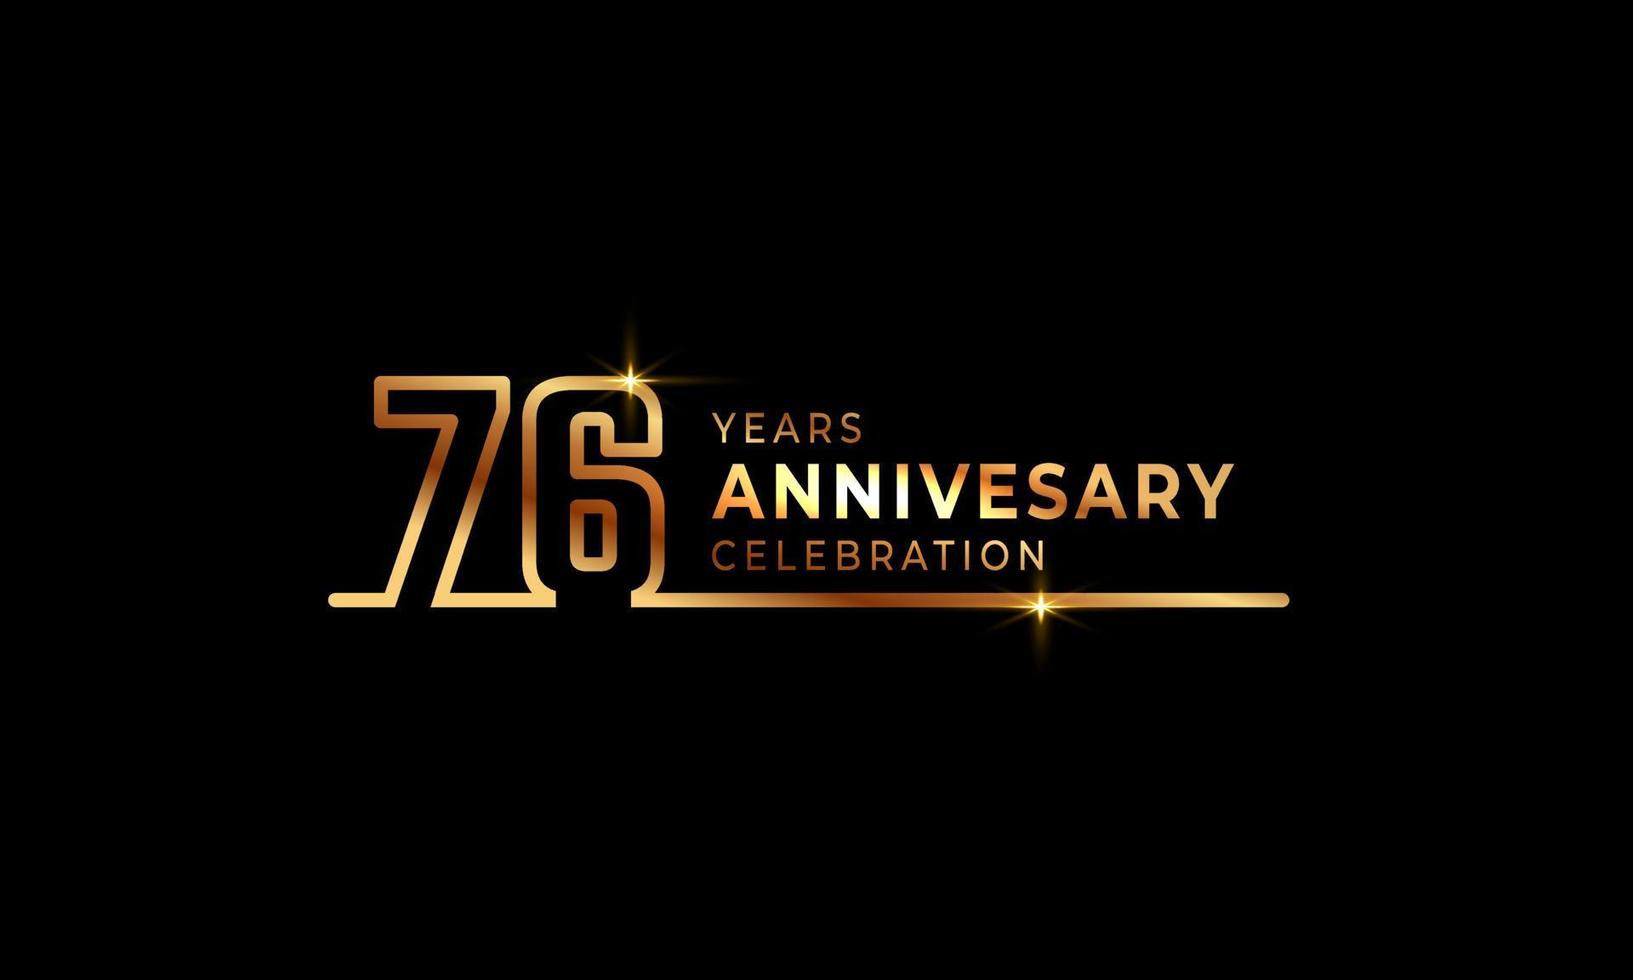 76-jarig jubileumviering logo met gouden gekleurde lettertypenummers gemaakt van één verbonden lijn voor feestgebeurtenis, bruiloft, wenskaart en uitnodiging geïsoleerd op donkere achtergrond vector